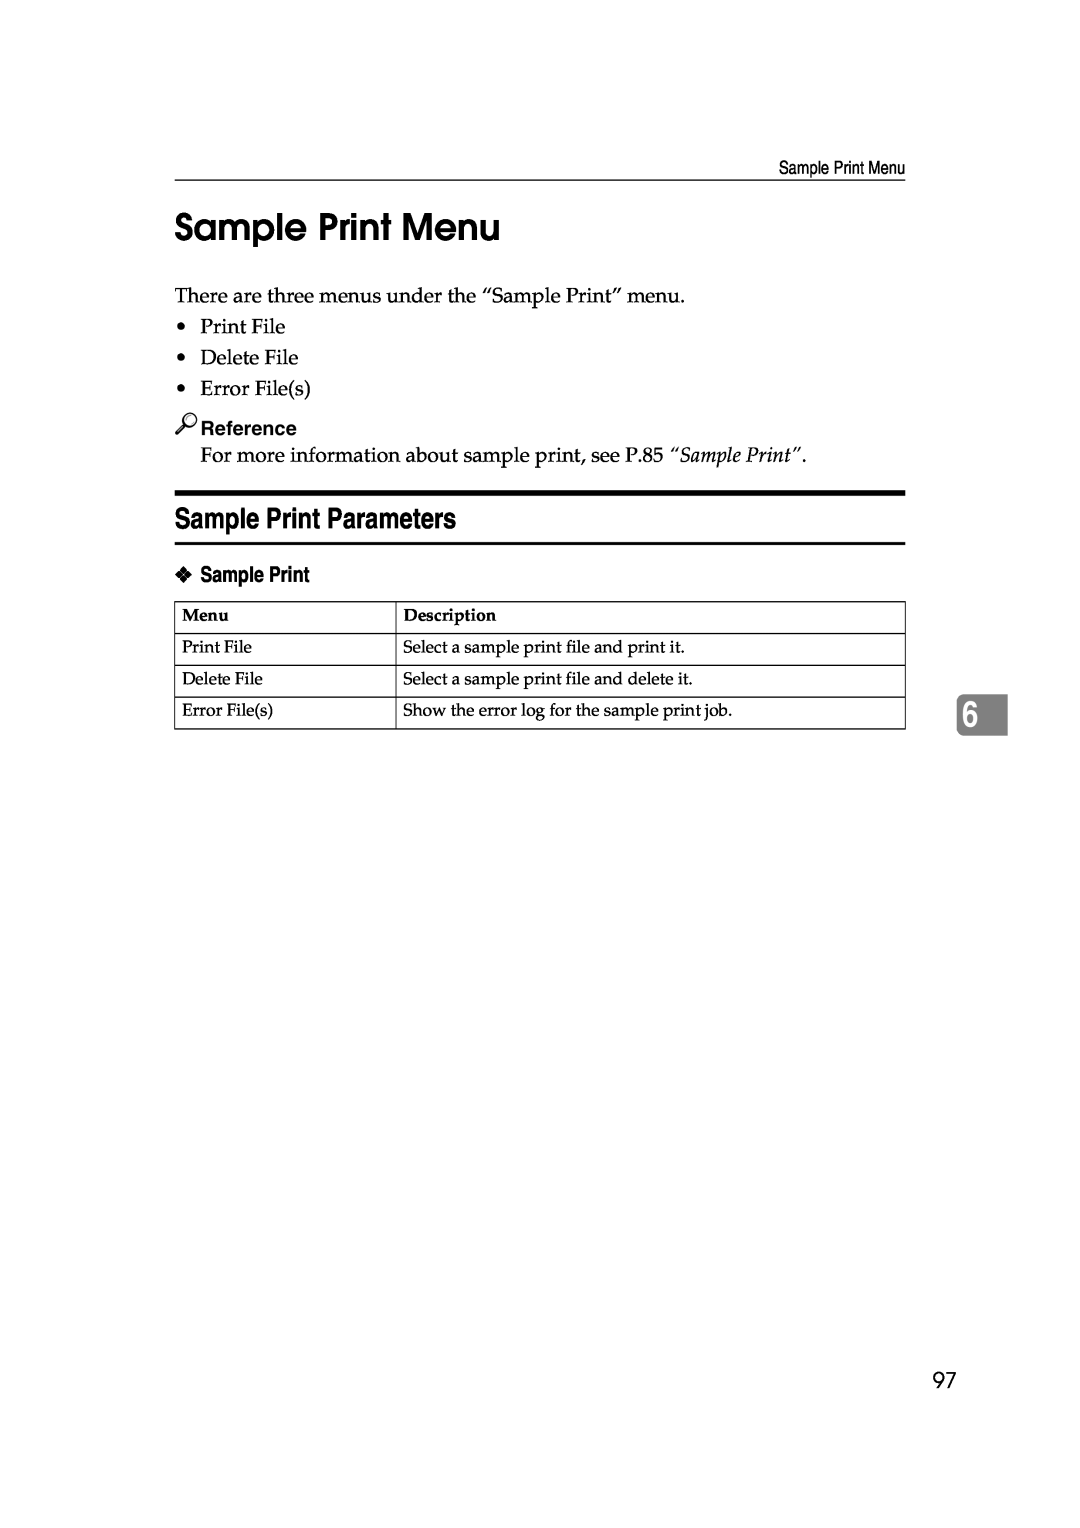 Lanier AP3200 manual Sample Print Menu, Sample Print Parameters 